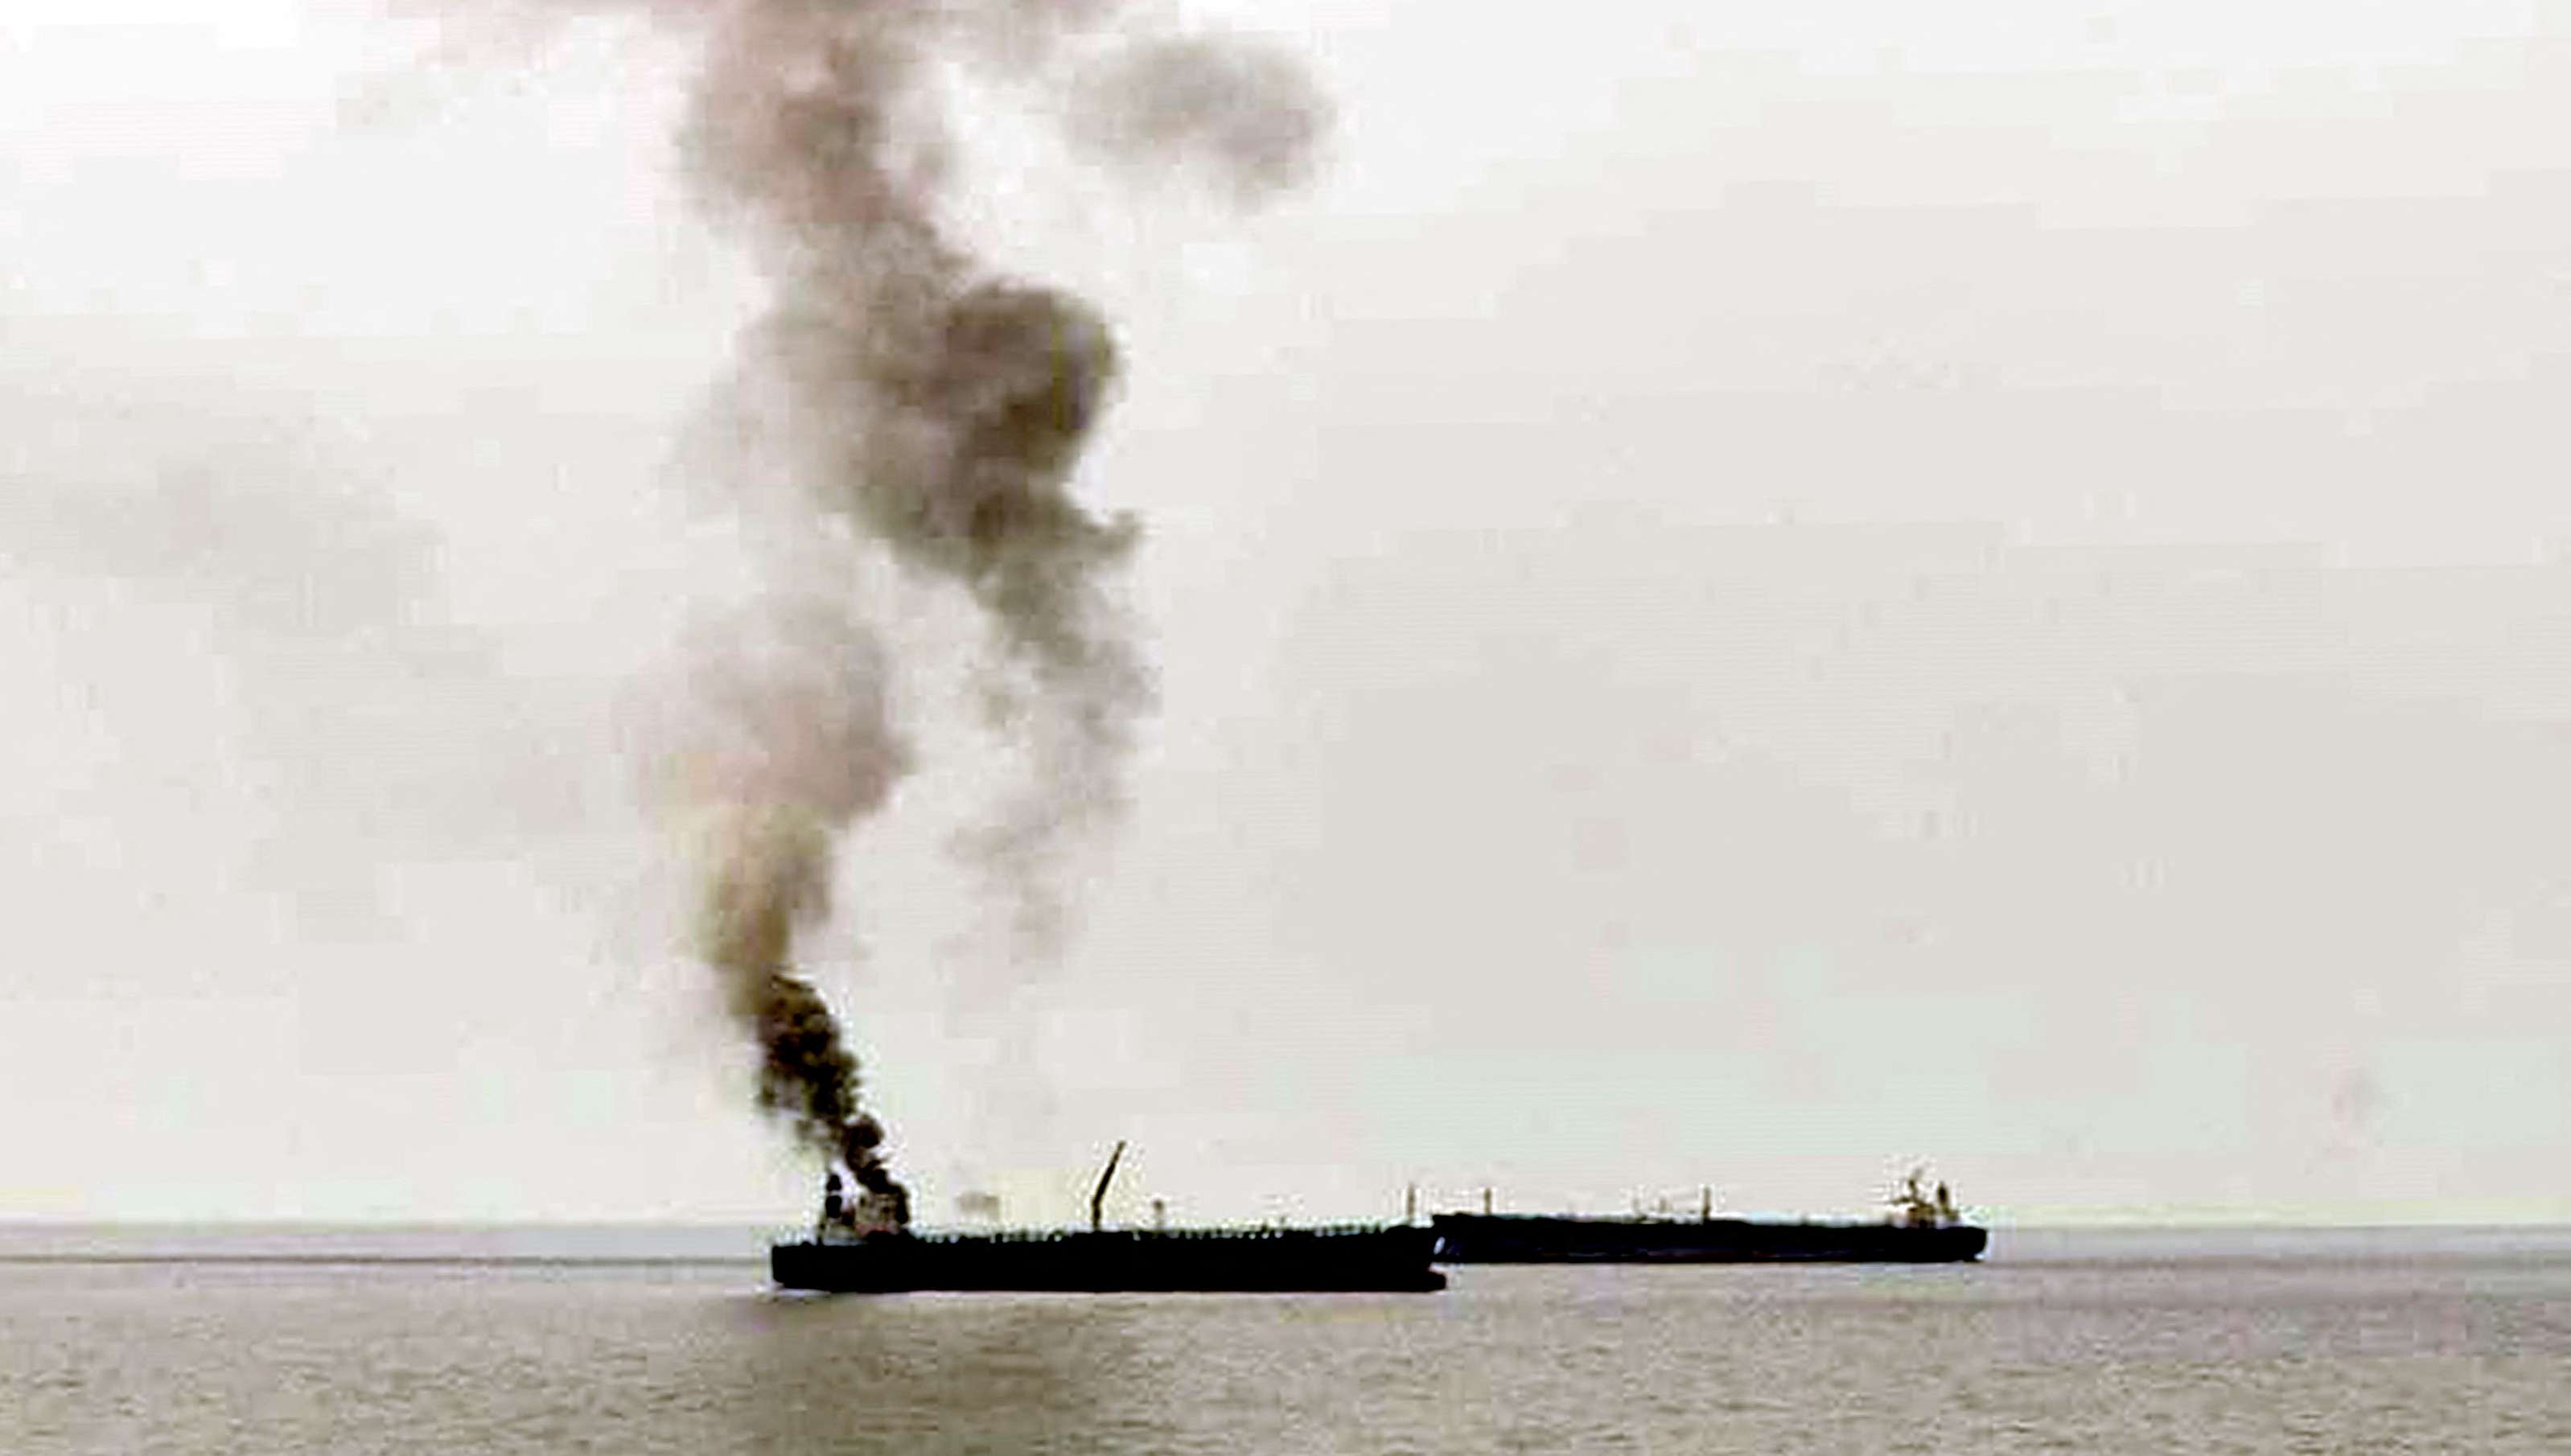 فرضية تعرض ناقلة النفط الإيرانية قبالة السواحل السورية لهجوم تخريبي أمر وارد